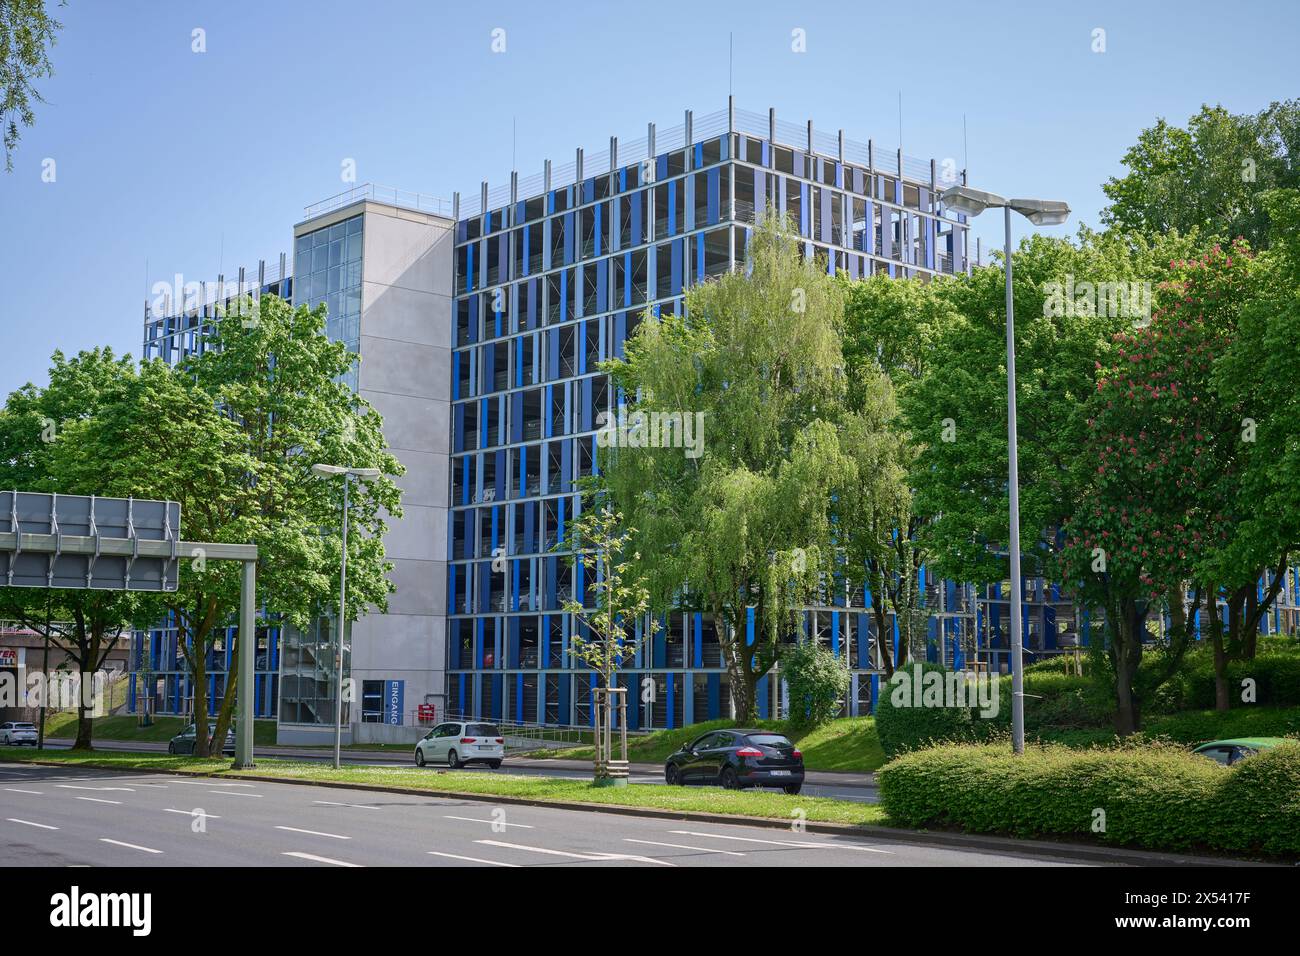 Die Essener Universität, Duisburg / Essen, Hat ein neues Parkhaus. Veröffentlichungen nur für redaktionelle Zwecke. Foto : IMAGO/FotoPrensa Banque D'Images